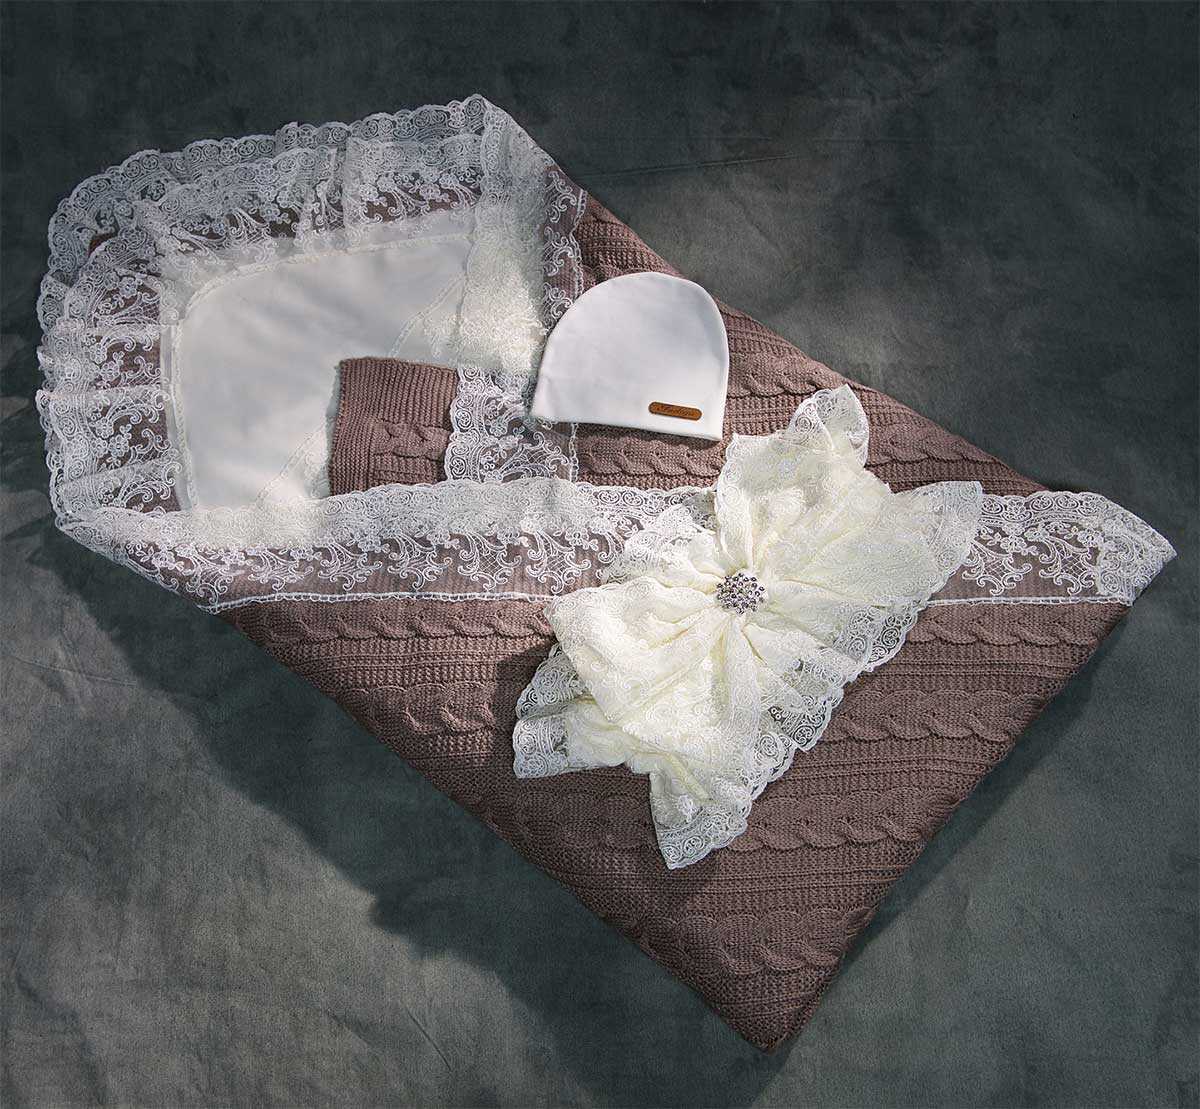 Оптимальные размеры детского одеяла и подушки для новорожденных